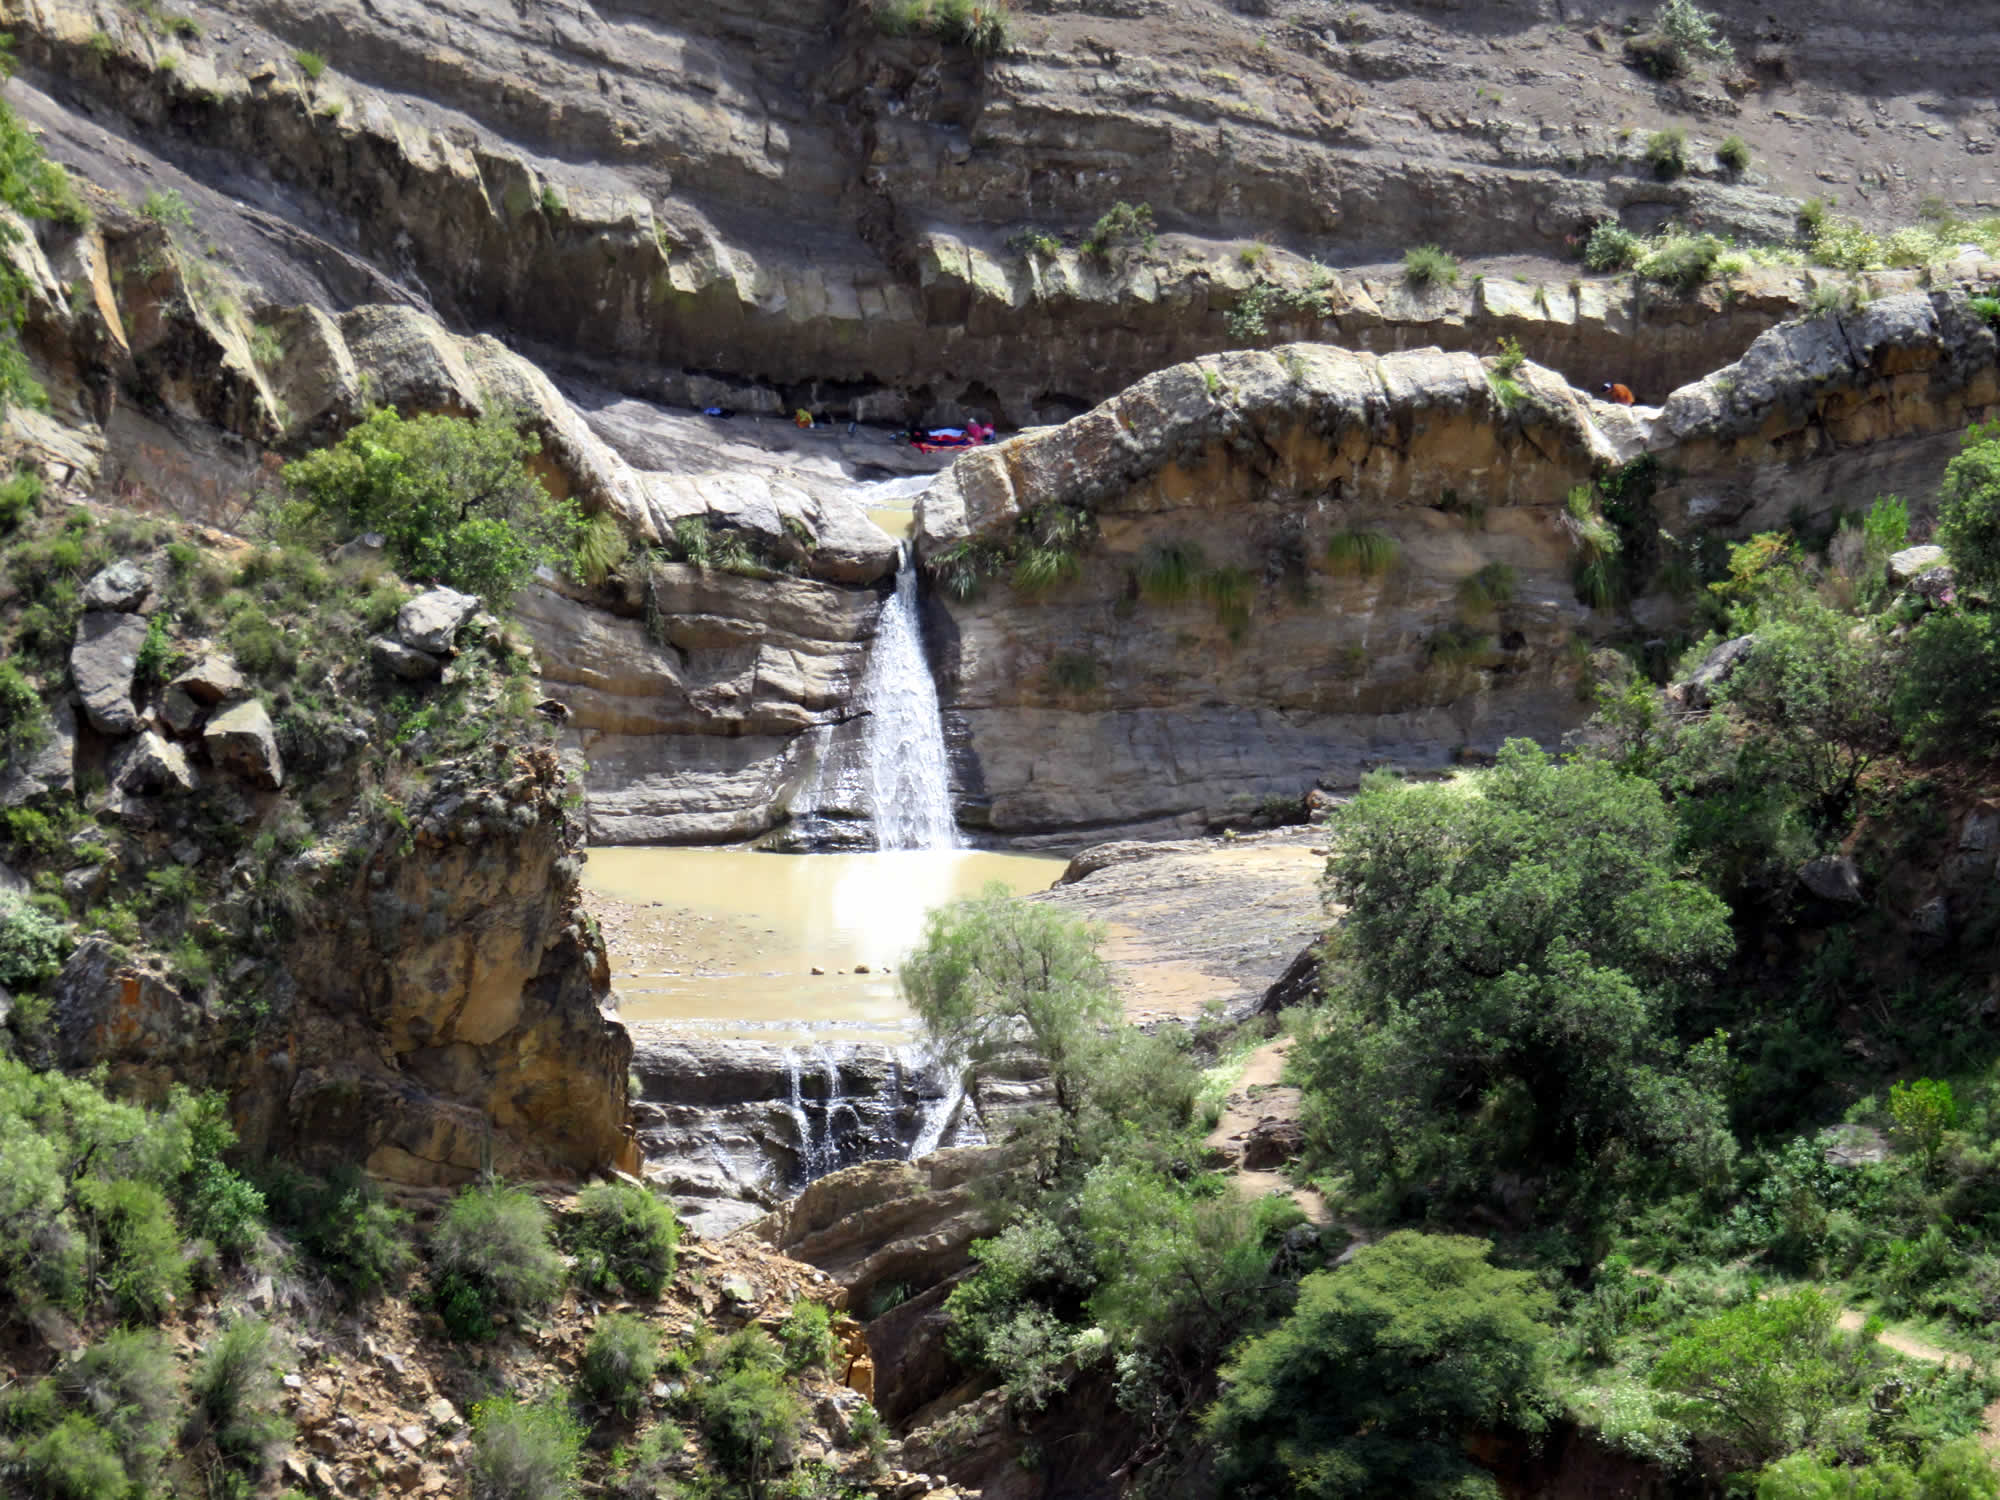 K'atalla (Seven falls)